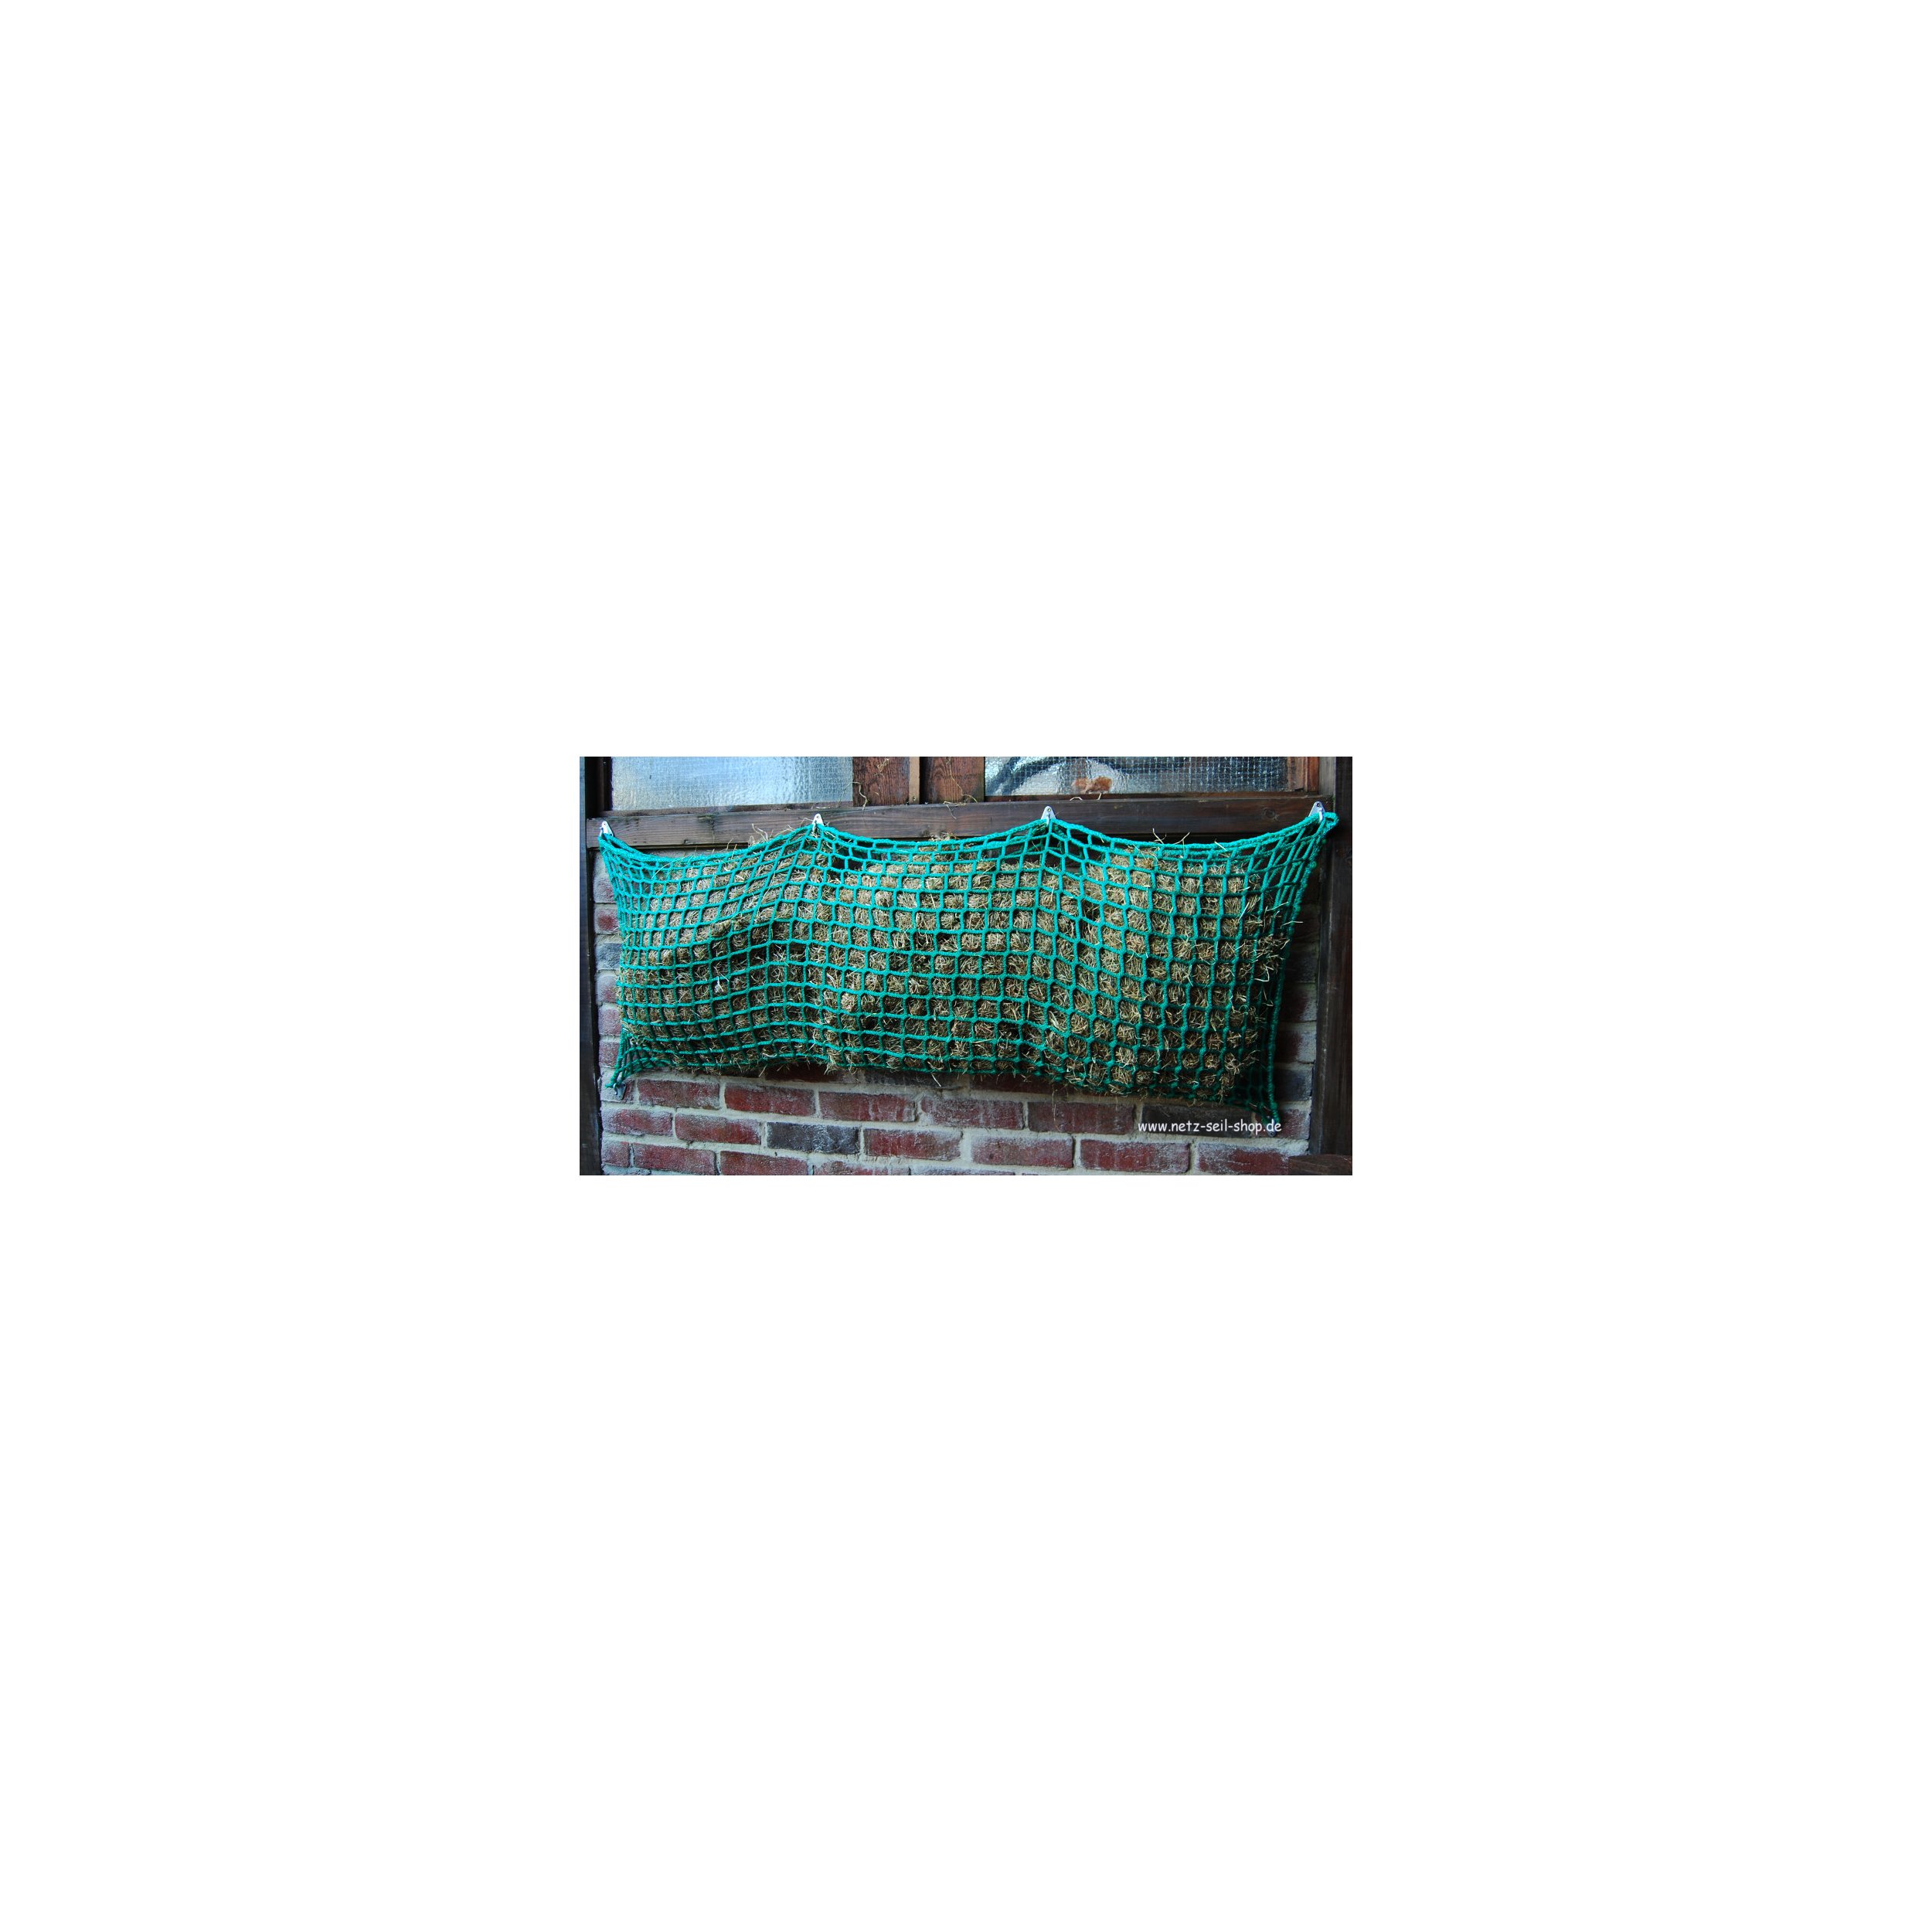 Hooi net in zakvorm, 1,20 m breed, hoogte 0,80 m Ø 5 mm garen dikte, # 45 mm maas